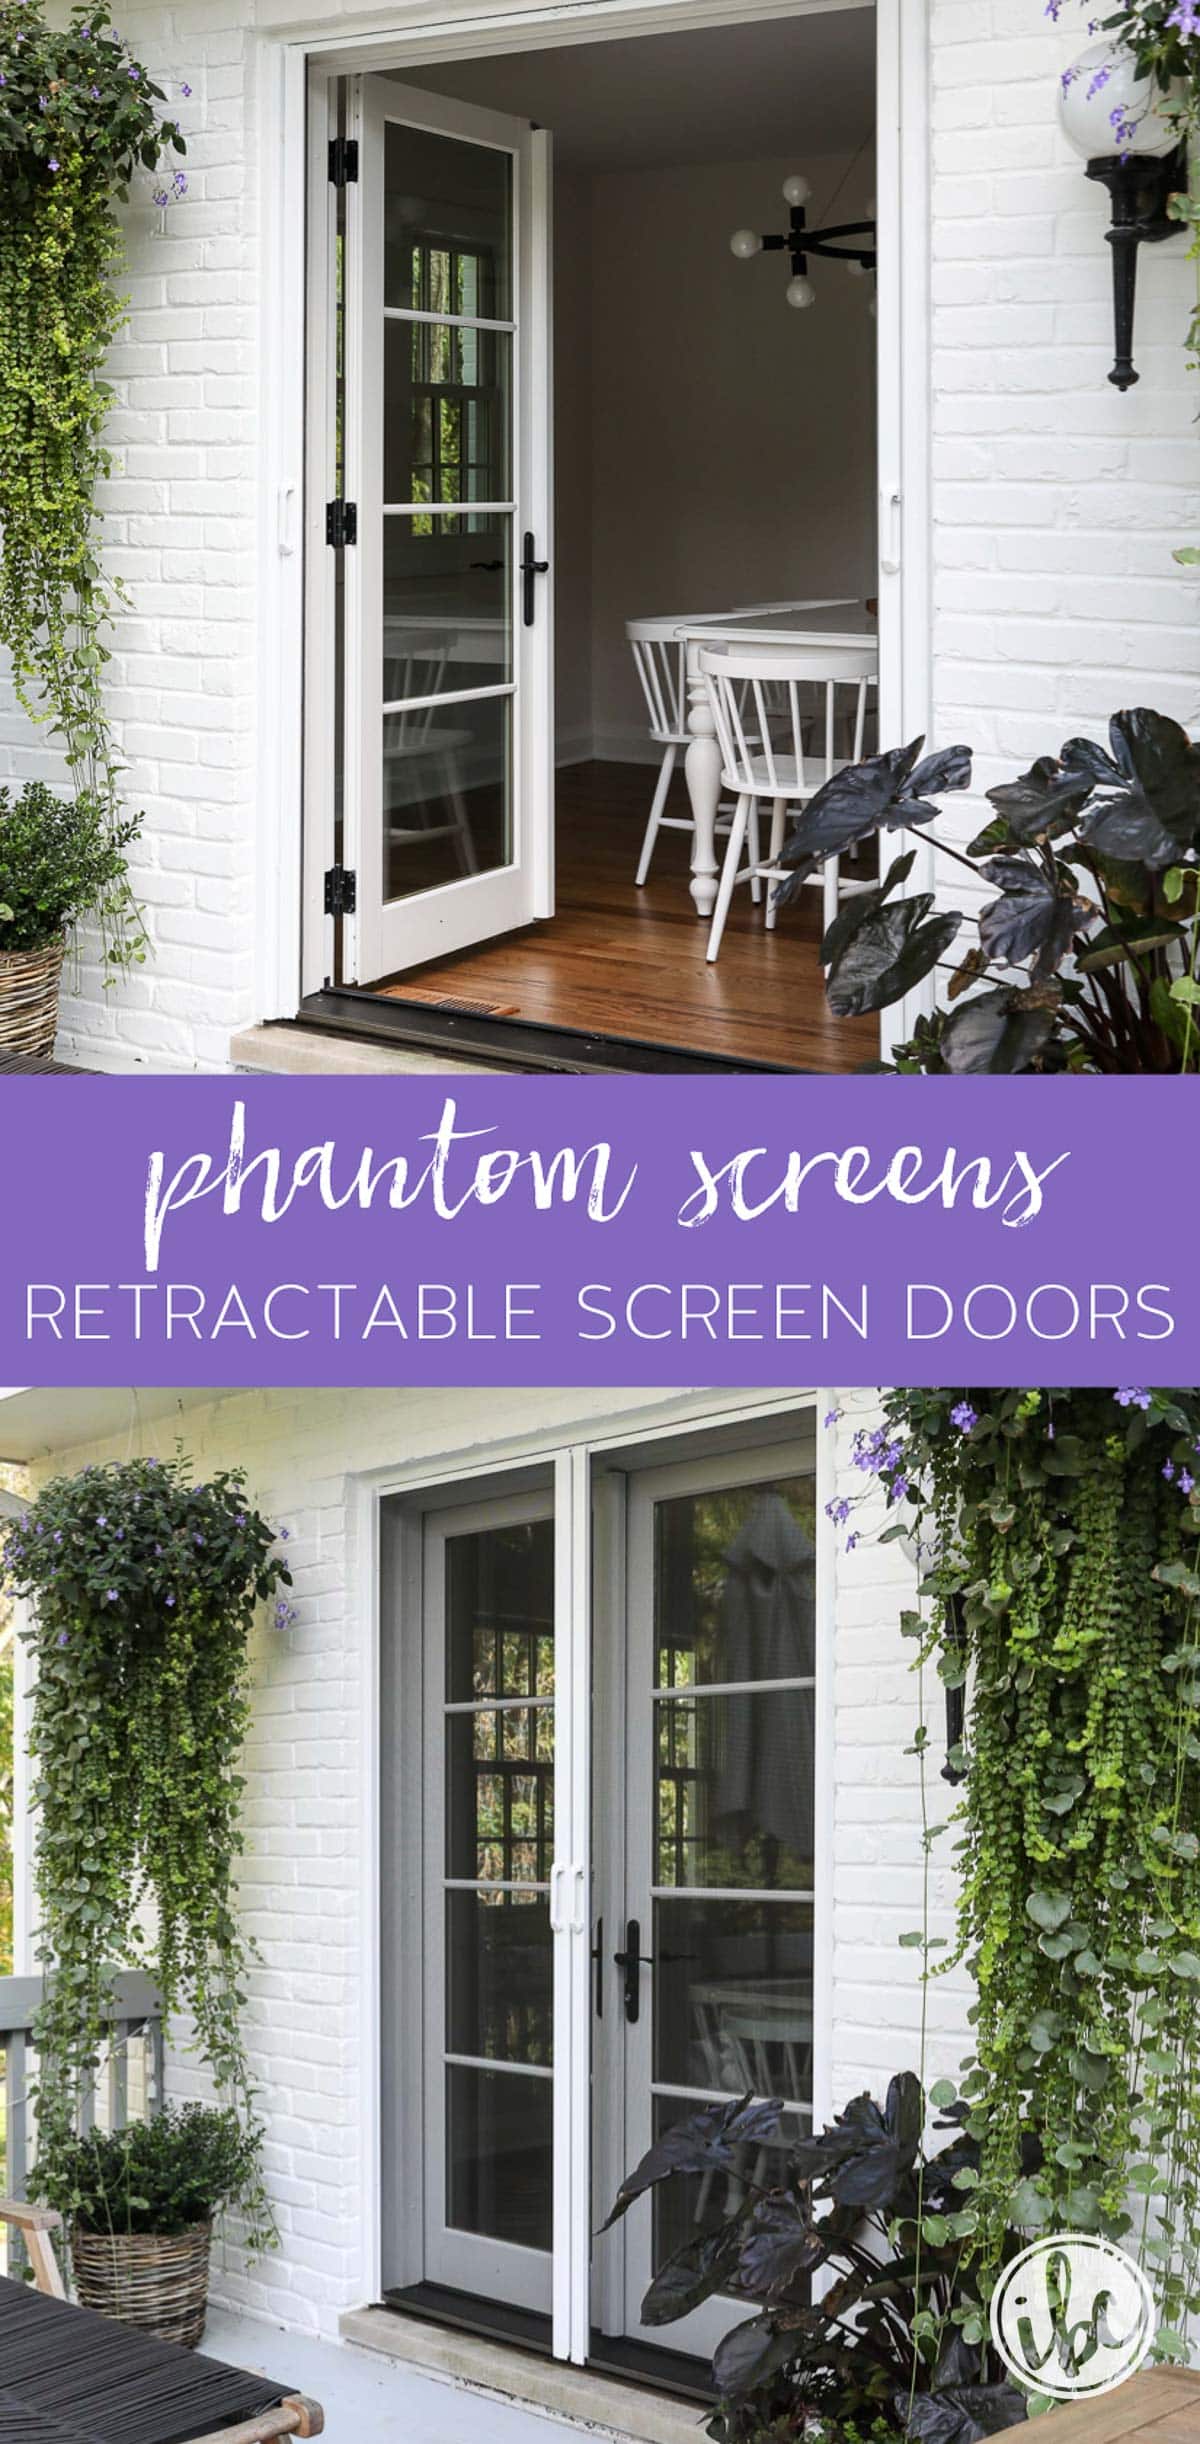 Adding Phantom Screens - Retractable Screen Door to your Home #screendoor #retractablescreendoor #retractable #screen #door #phantomscreens